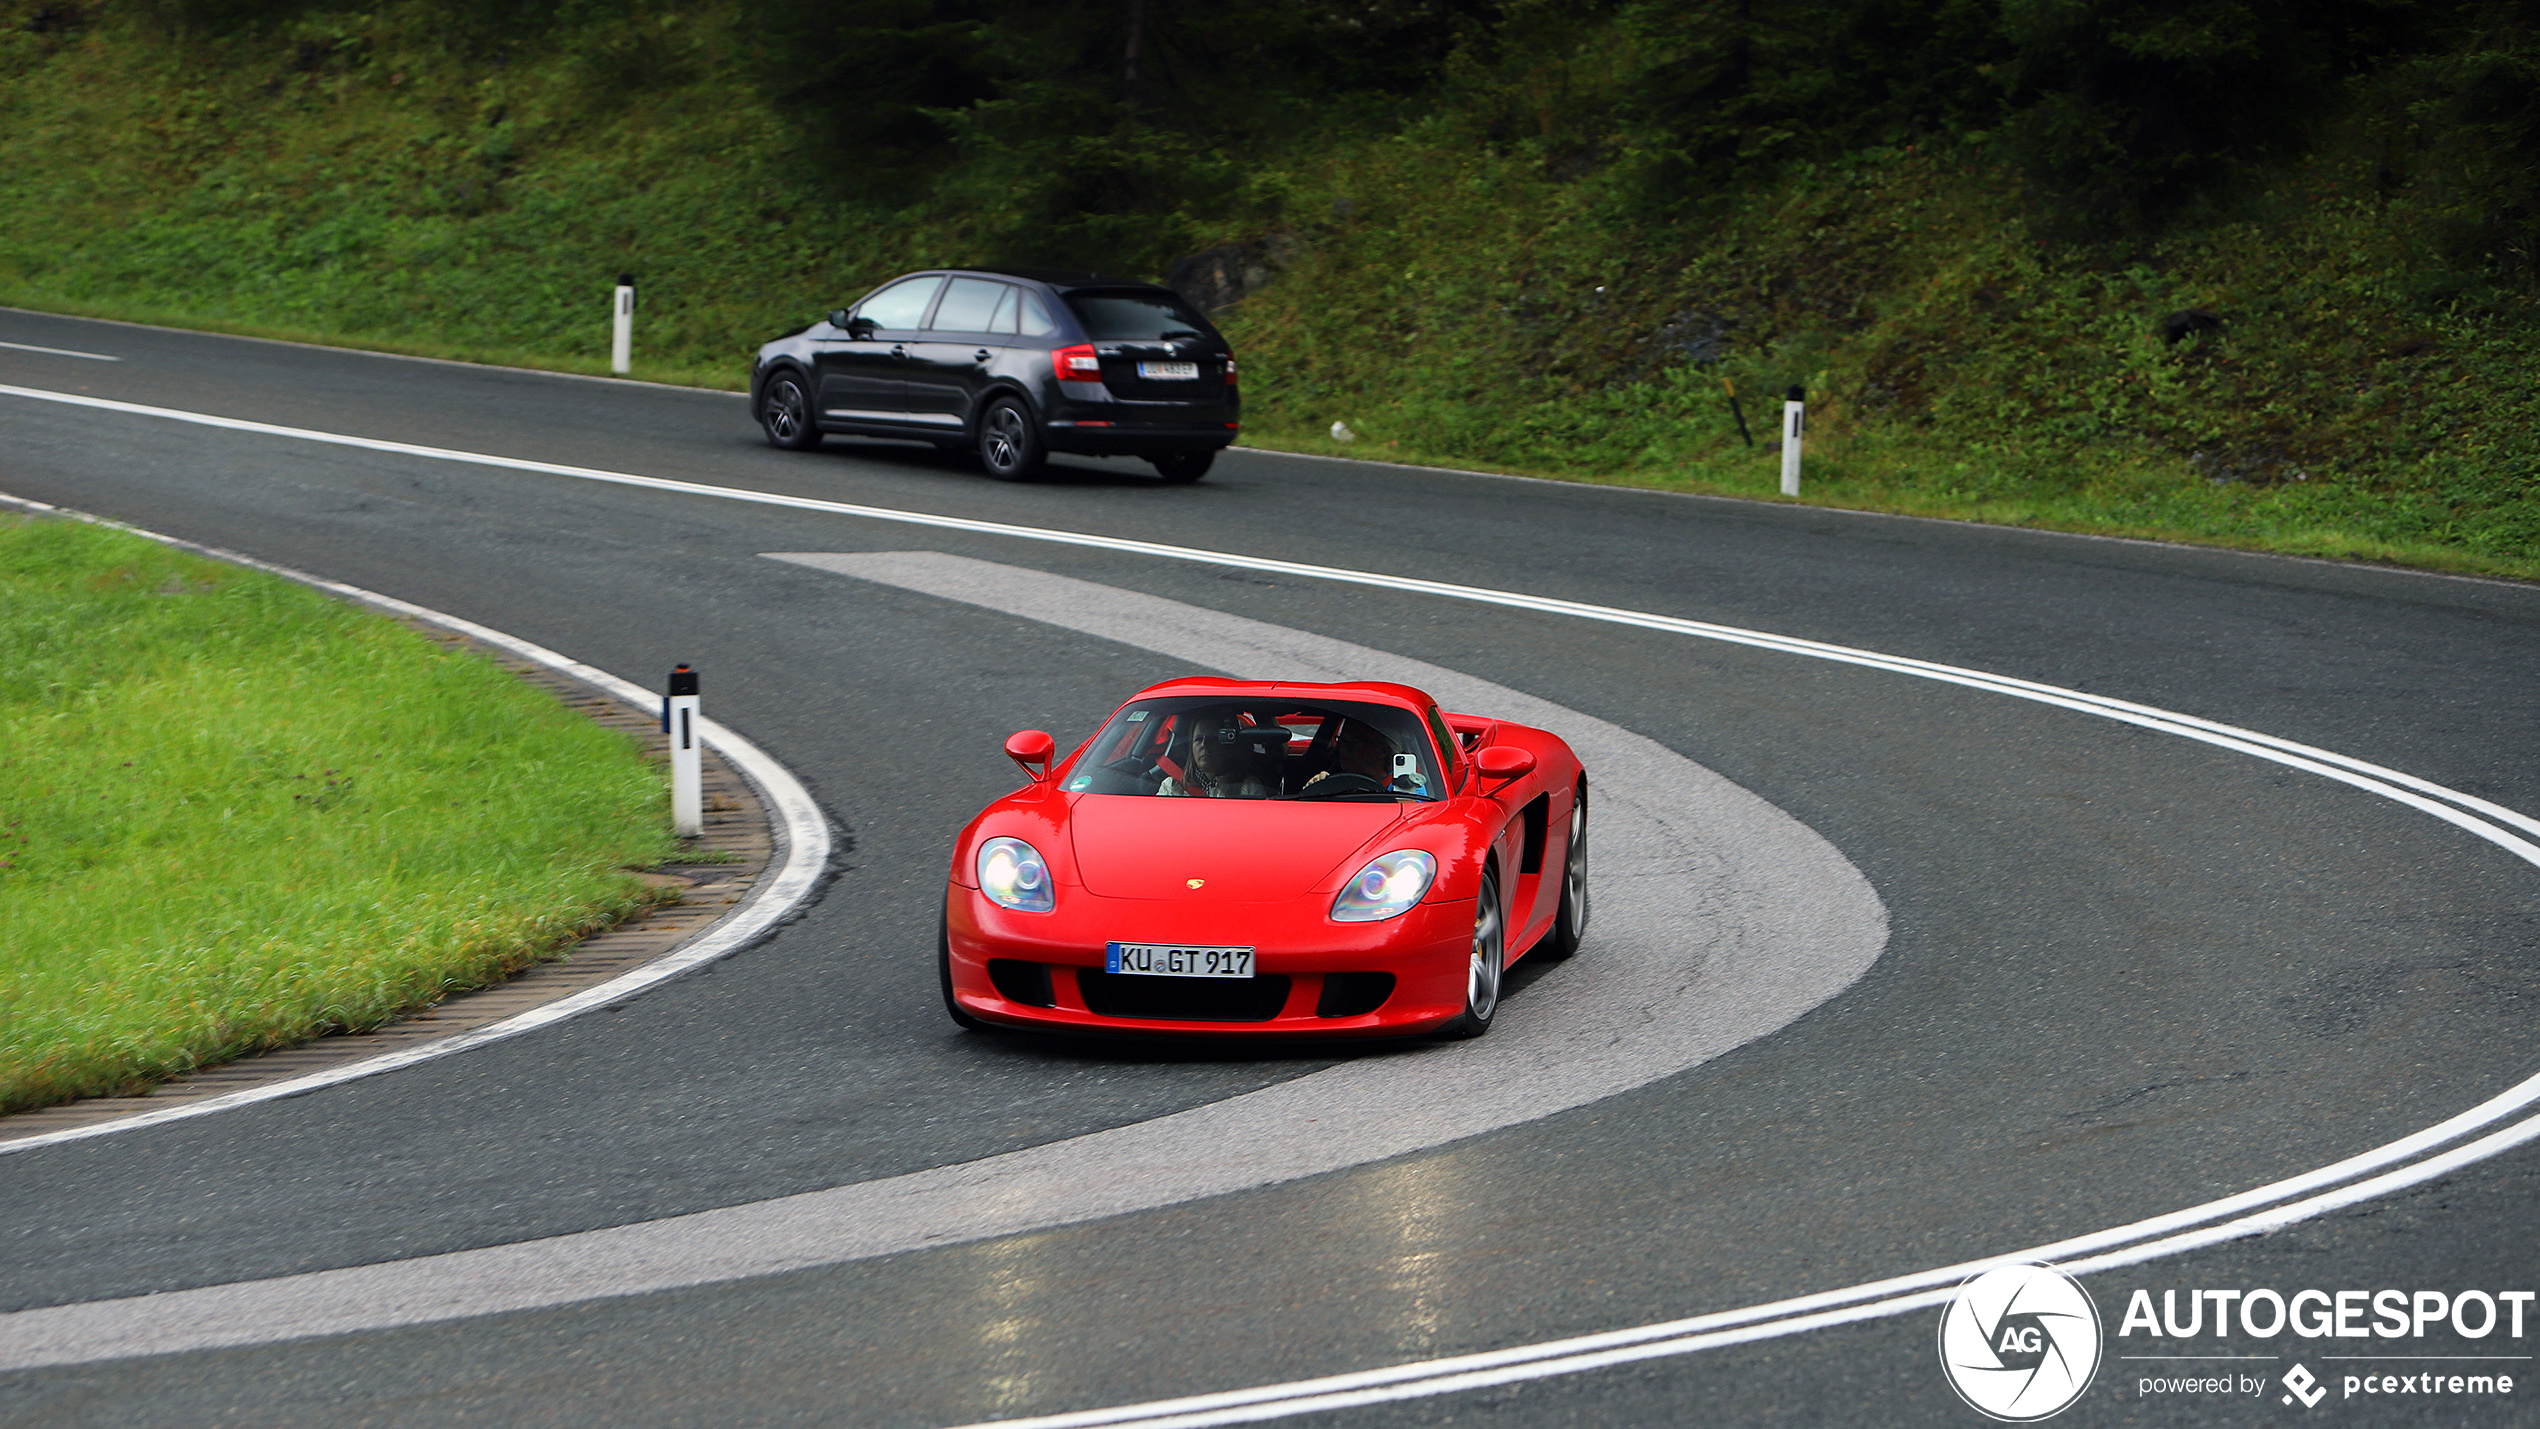 Porsche Carrera GT had op beter weer gehoopt